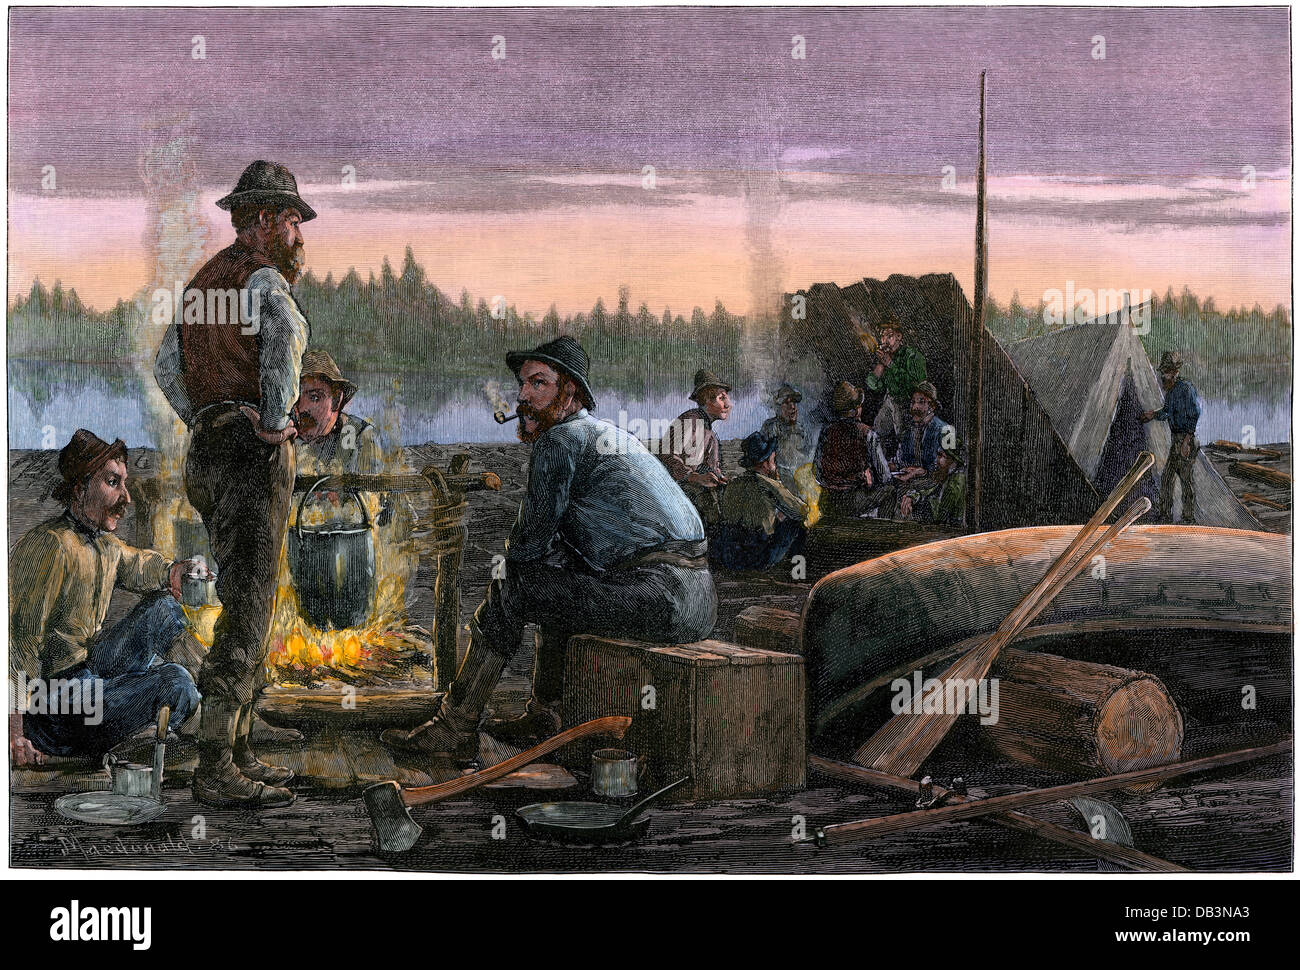 Distributeurs camping à un radeau de bois sur une rivière, dans les bois du nord, 1880. À la main, gravure sur bois Banque D'Images